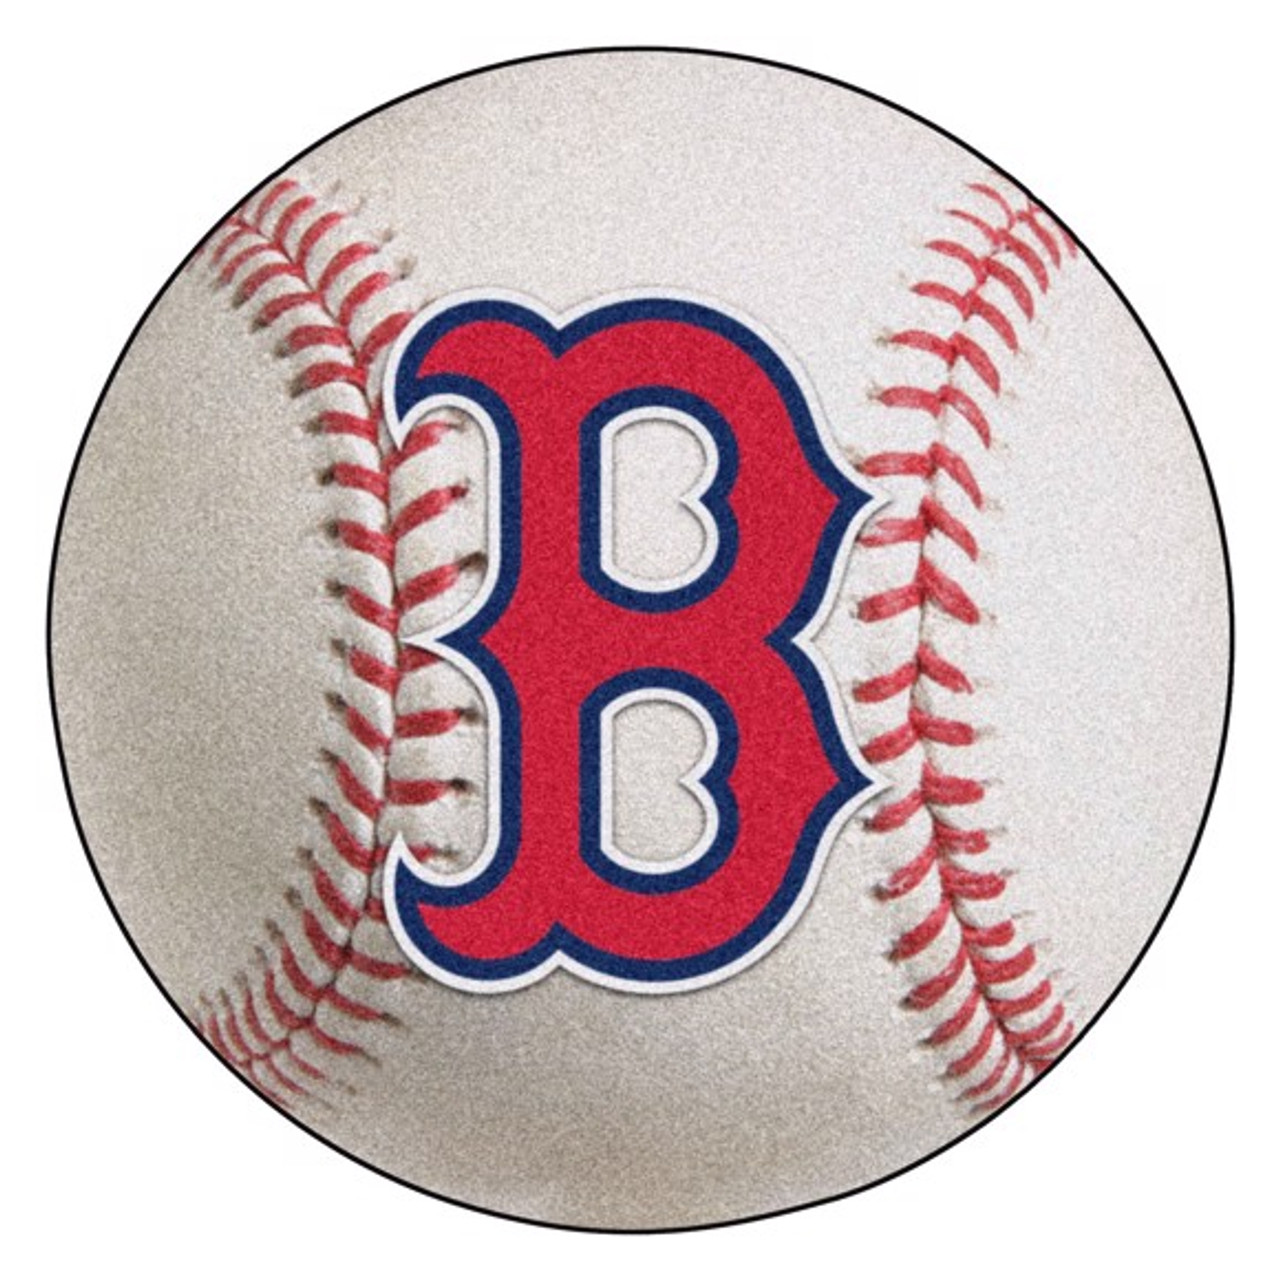 red sox baseball logo